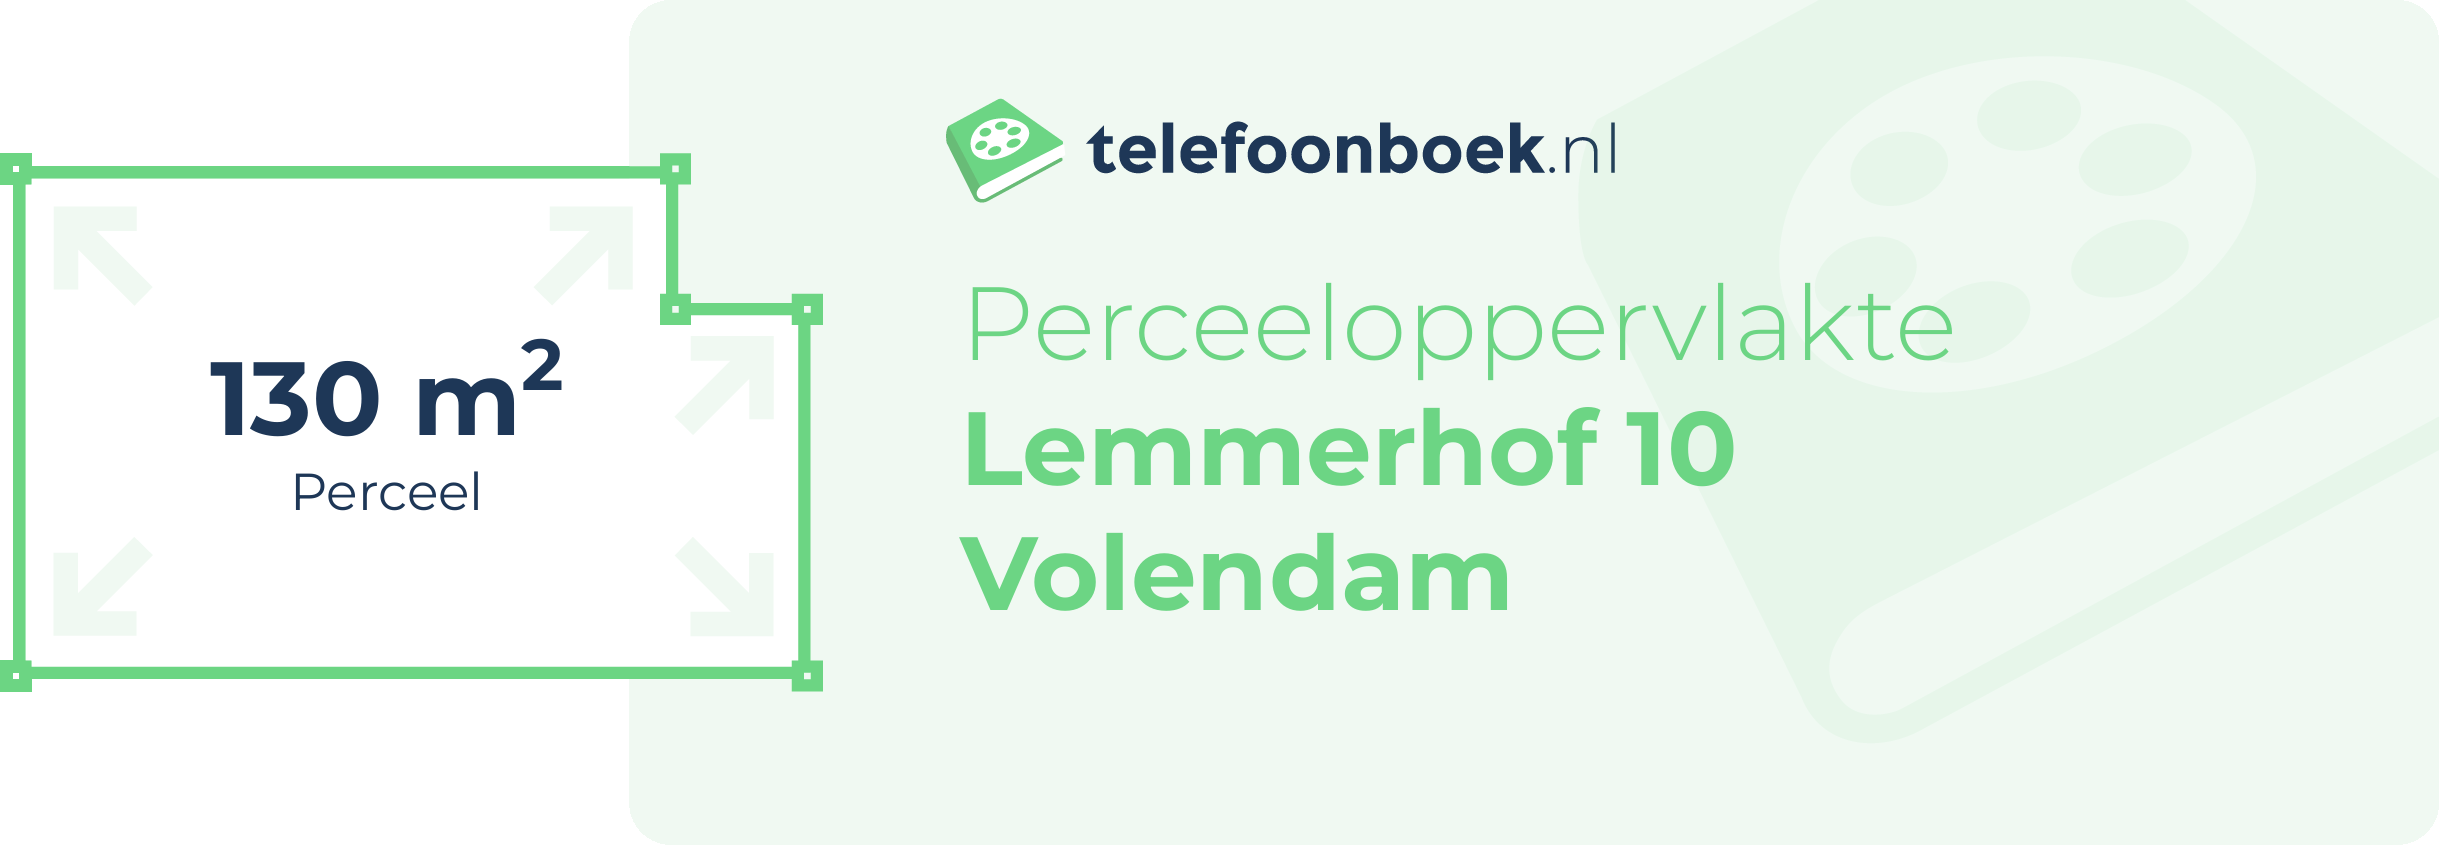 Perceeloppervlakte Lemmerhof 10 Volendam